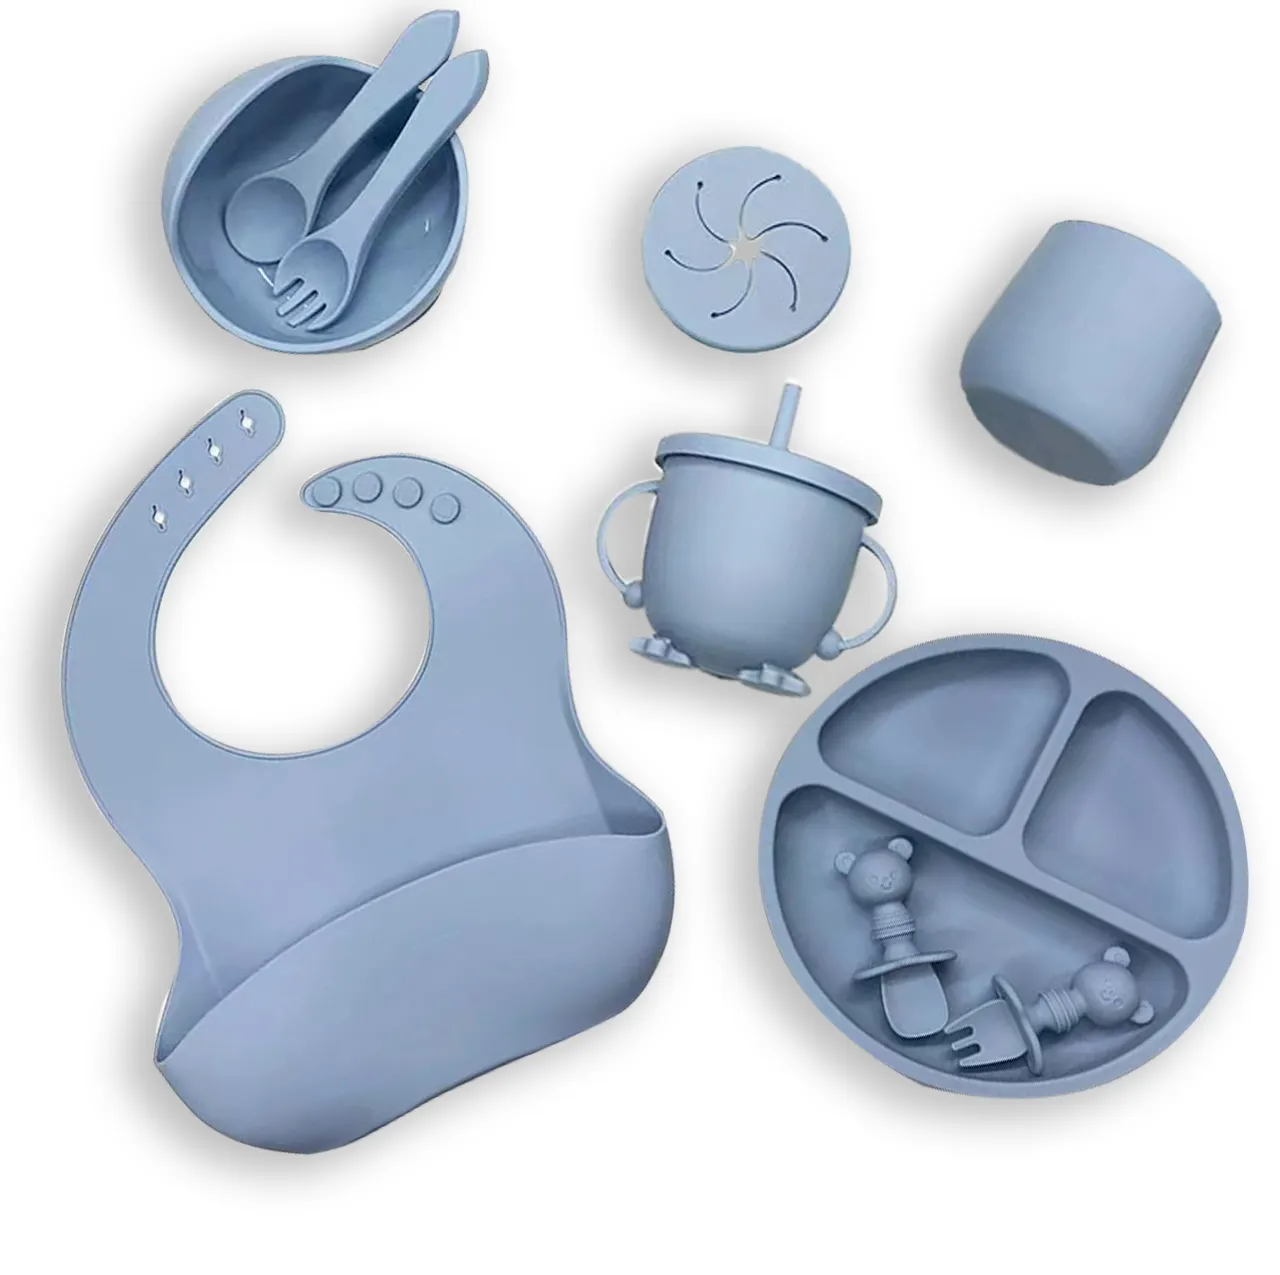 Großhandel liefert Geschirr Baby Fütterung sset BPA Free Geschirr Saug schale Schüssel platte Geteiltes Silikon Baby Fütterung sset